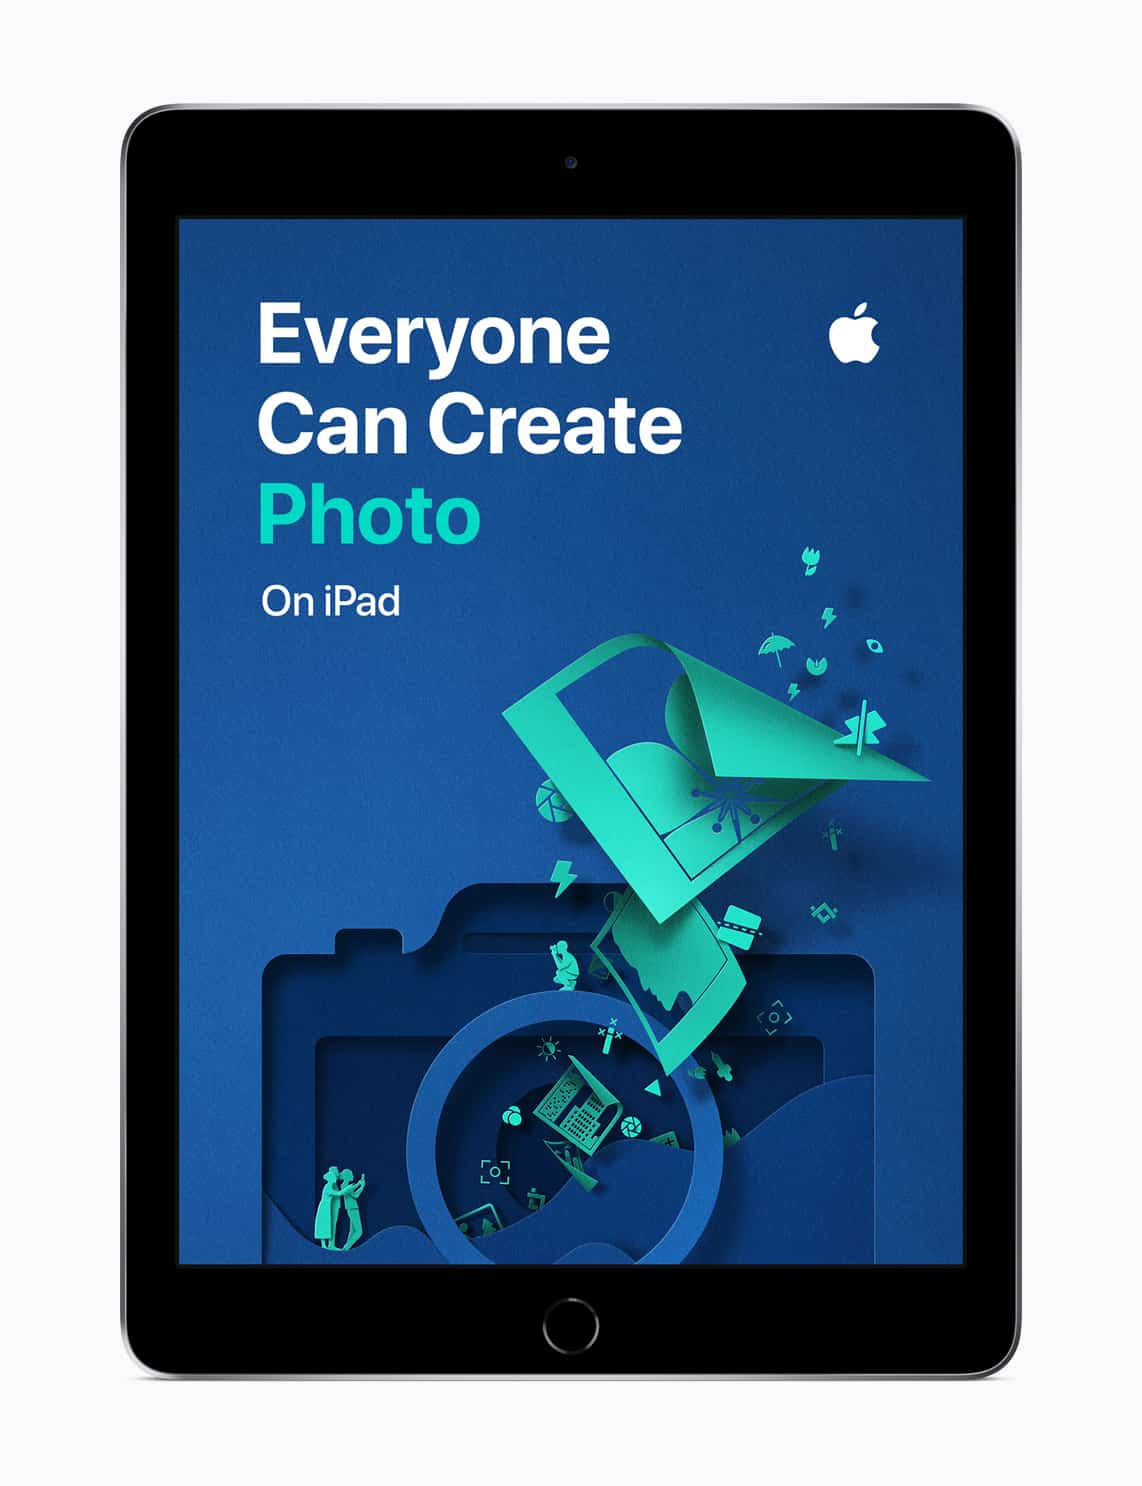 Apple iPad Everyone Can Create photo screen 09262018